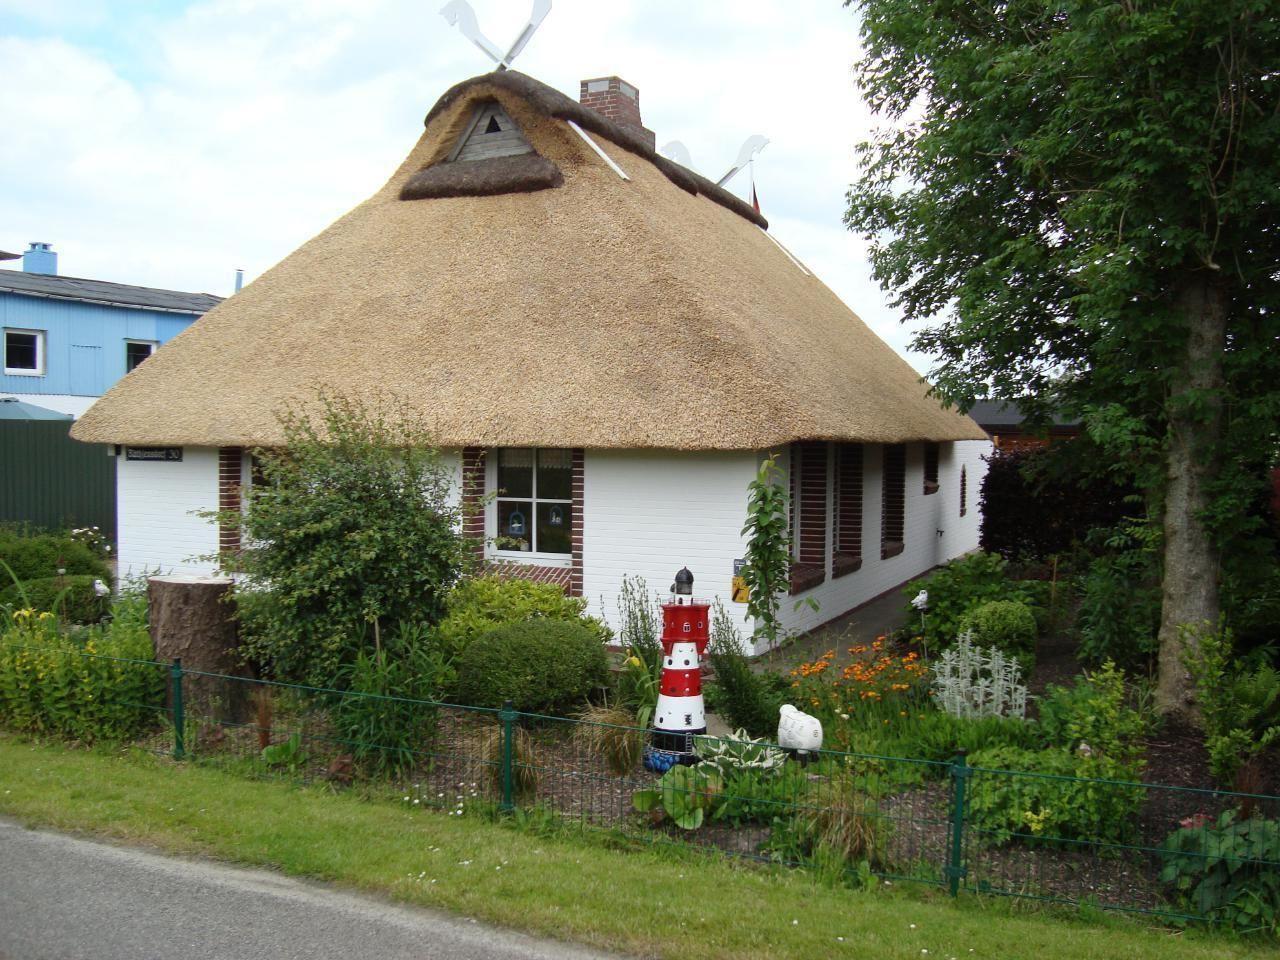 Ferienhaus in Rathjensdorf mit Grill, Garten und T  in Schleswig Holstein